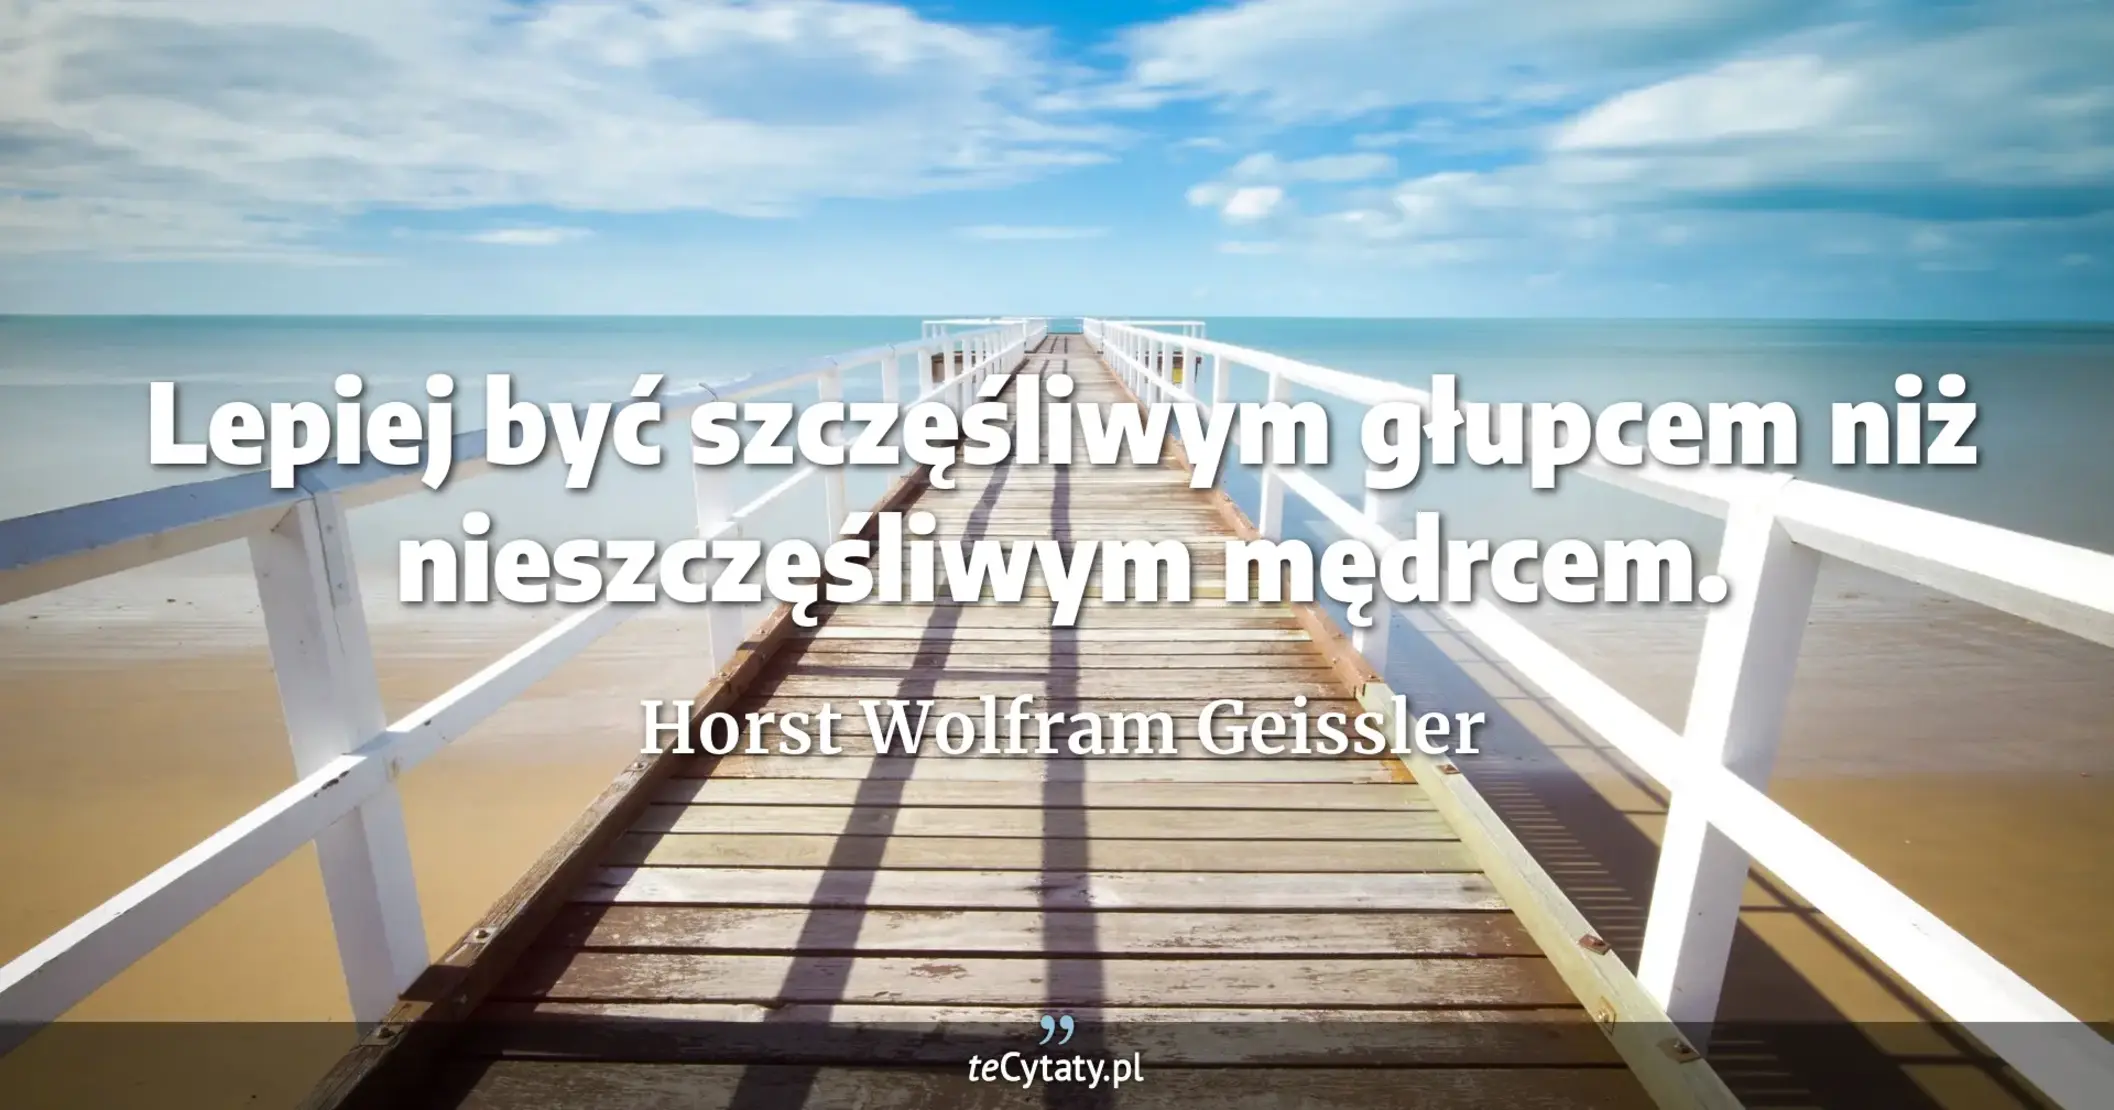 Lepiej być szczęśliwym głupcem niż nieszczęśliwym mędrcem. - Horst Wolfram Geissler